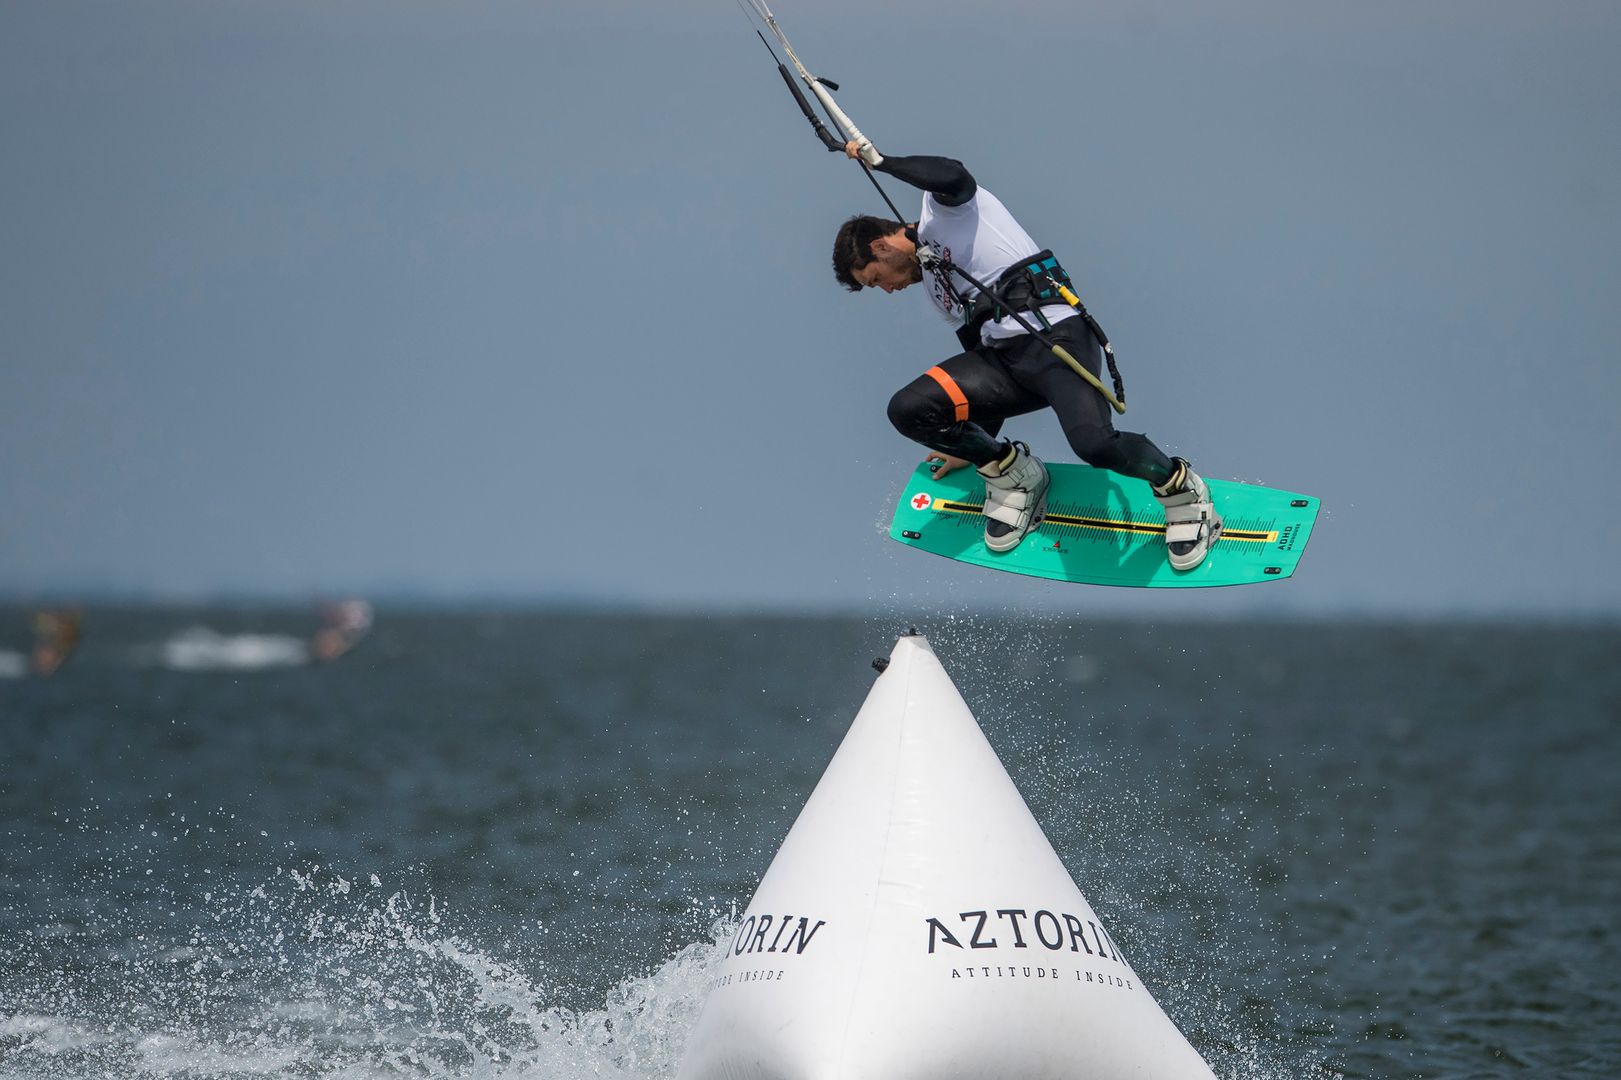 AZTORIN Kite Challenge - zakończono kolejne zawody Pucharu Polski w kitesurfingu!